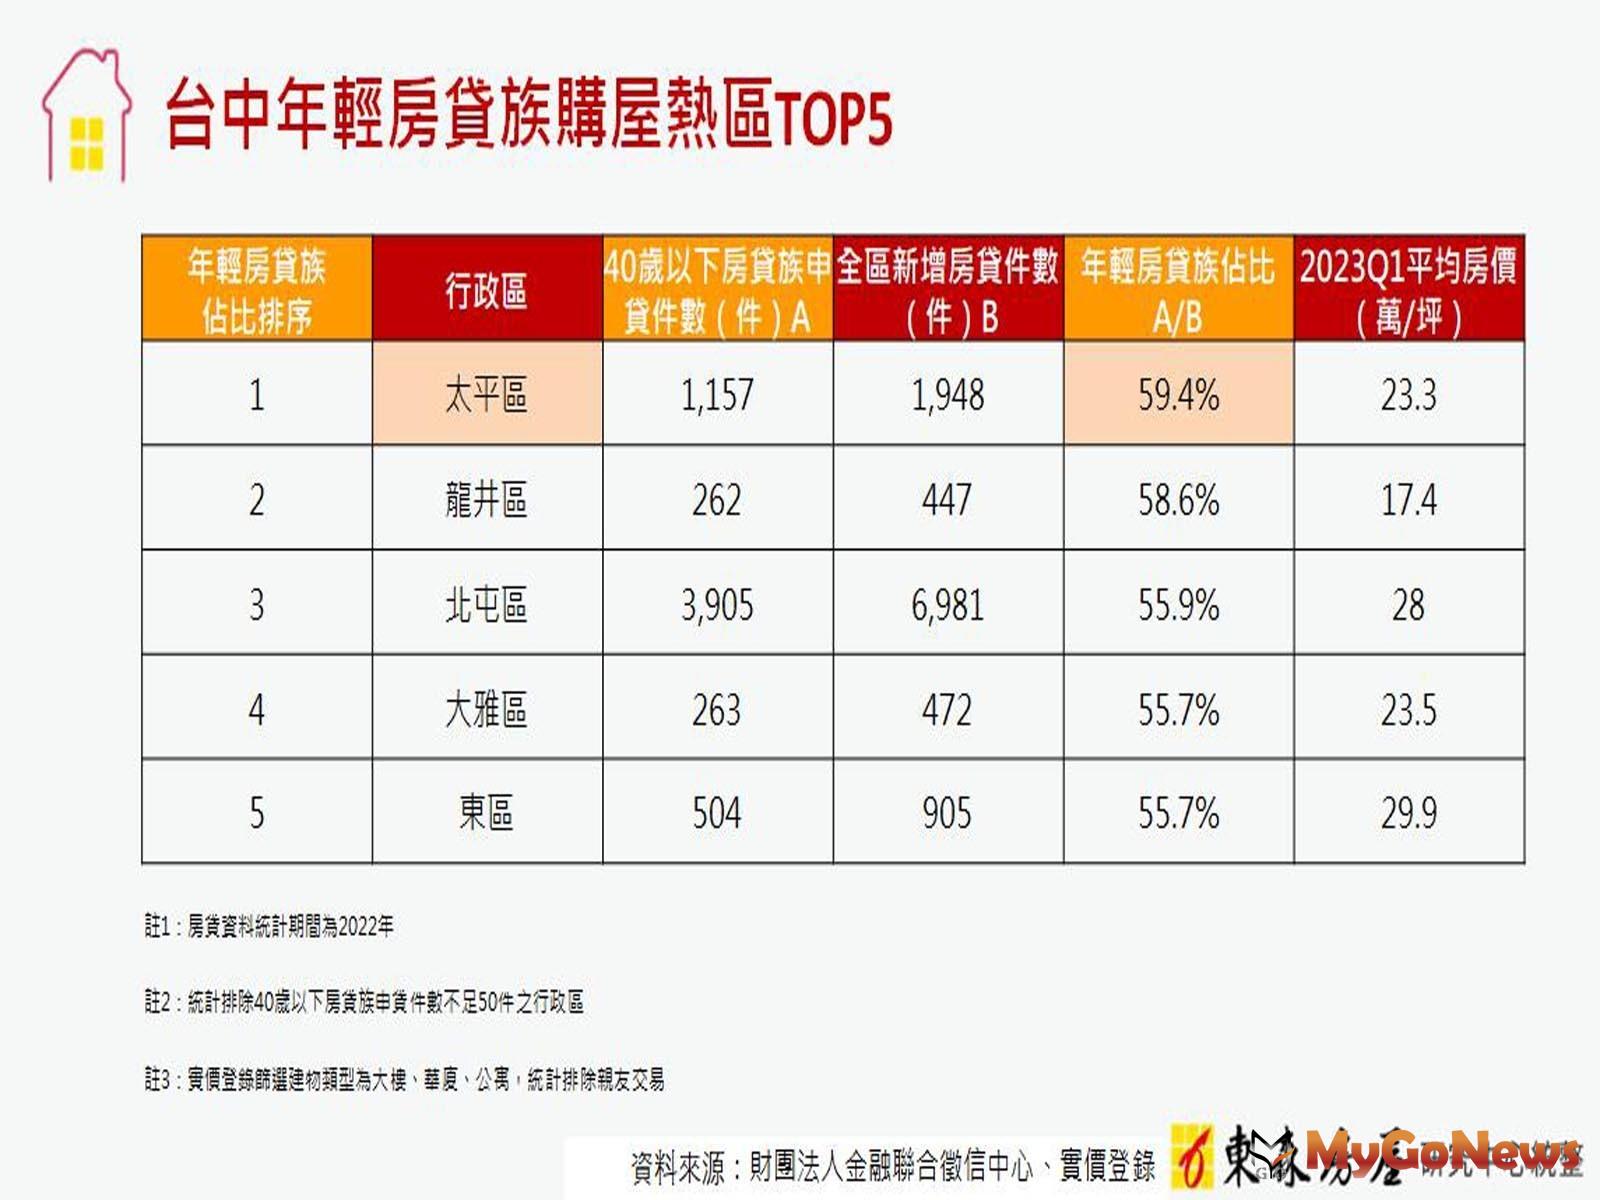 台中年輕房貸族購屋熱區TOP5 (圖/東森房屋) MyGoNews房地產新聞 市場快訊